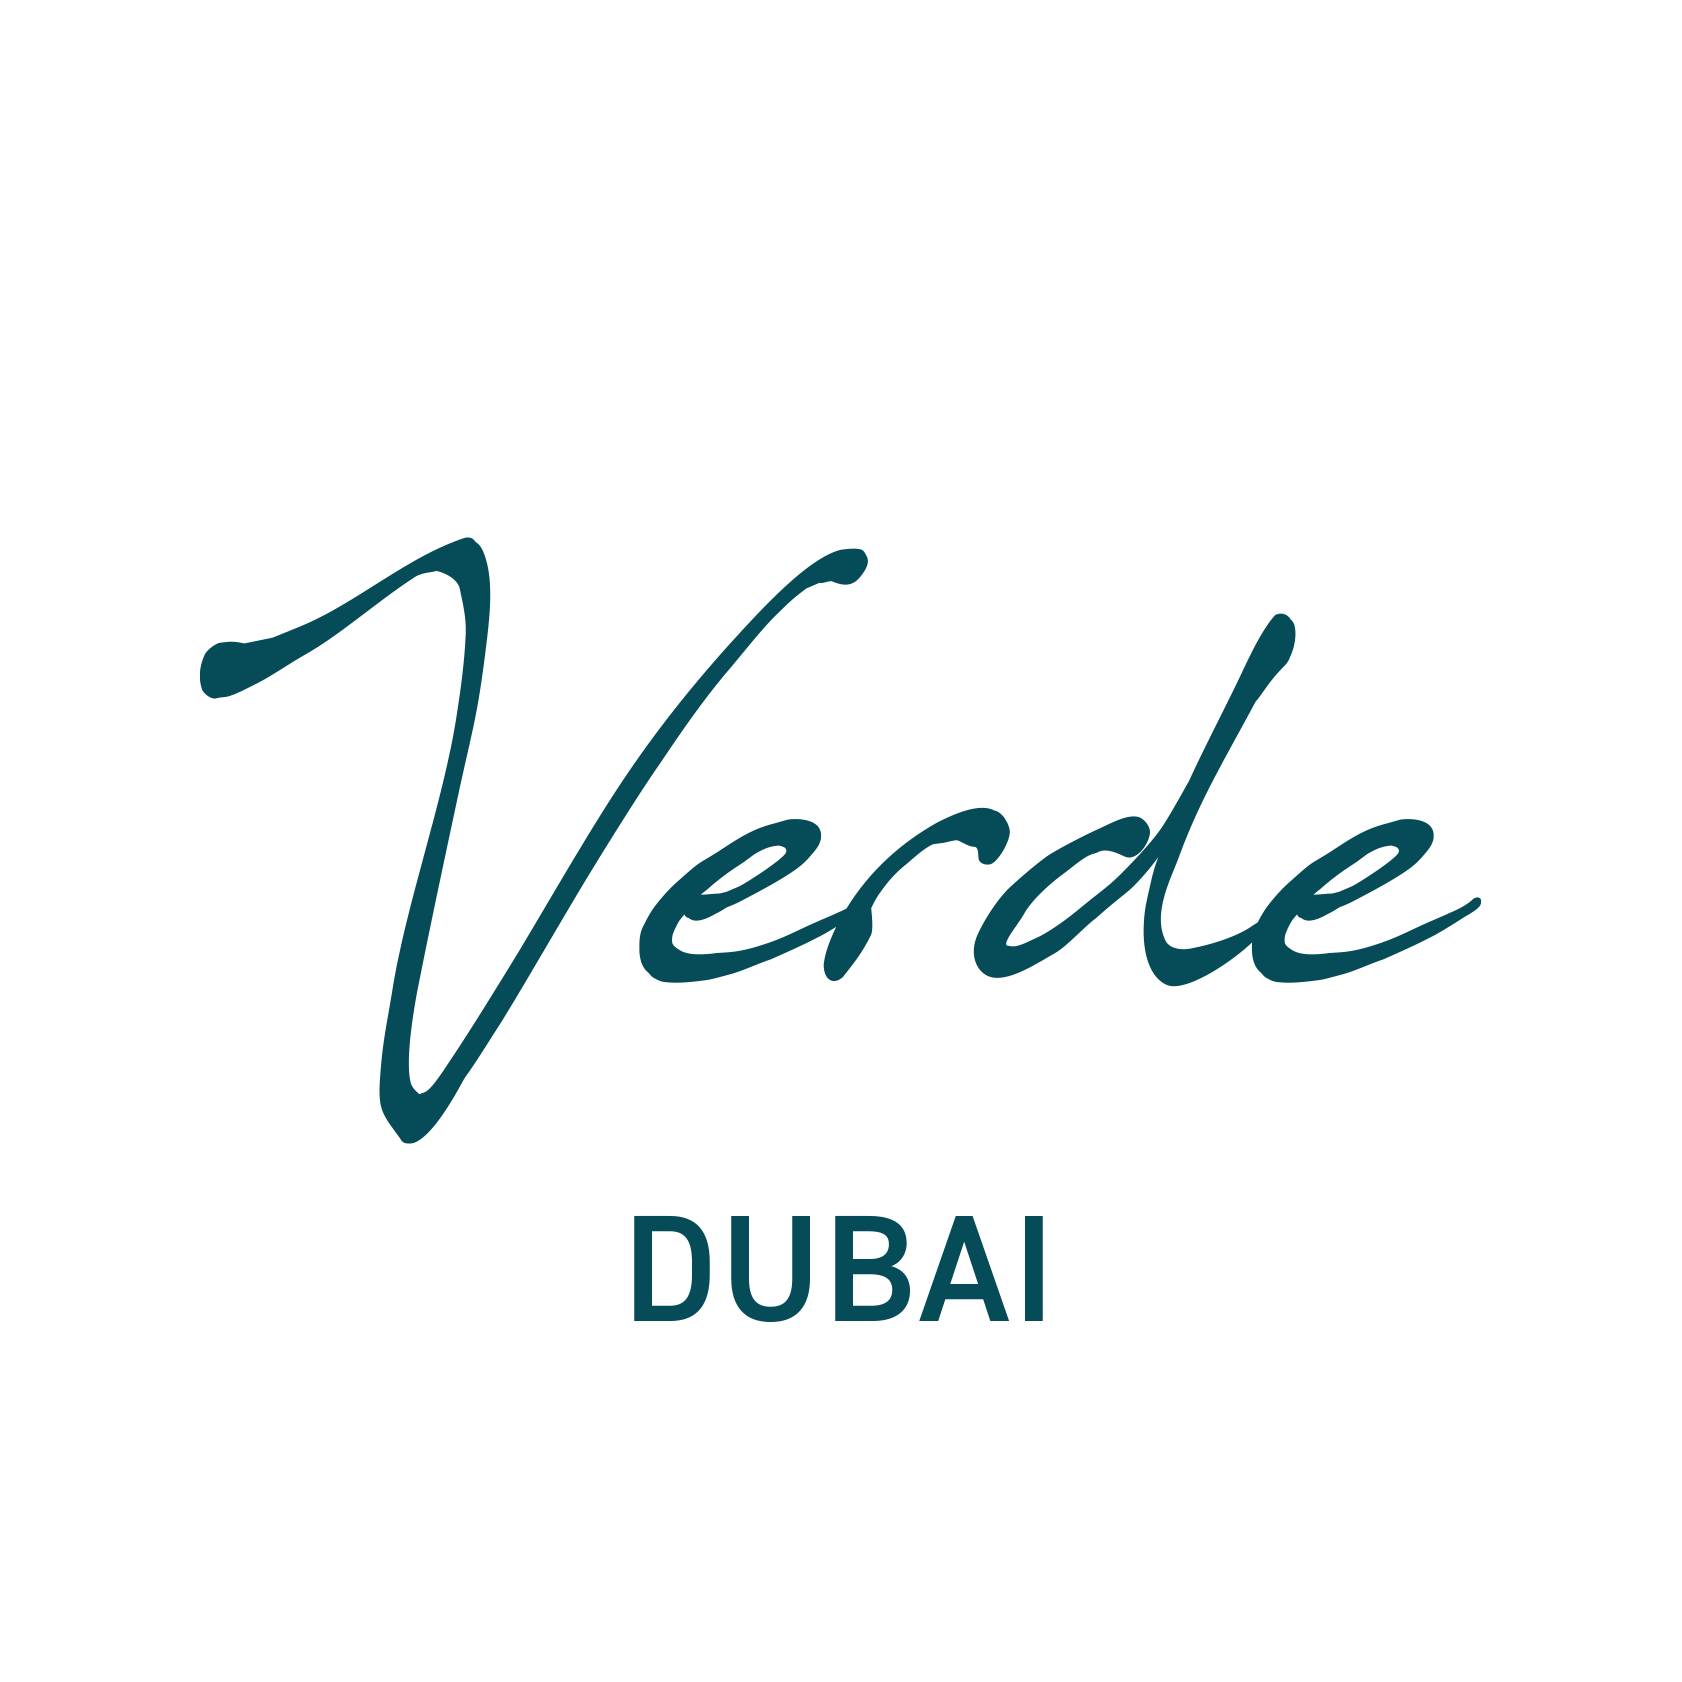 Verde Dubai - Coming Soon in UAE